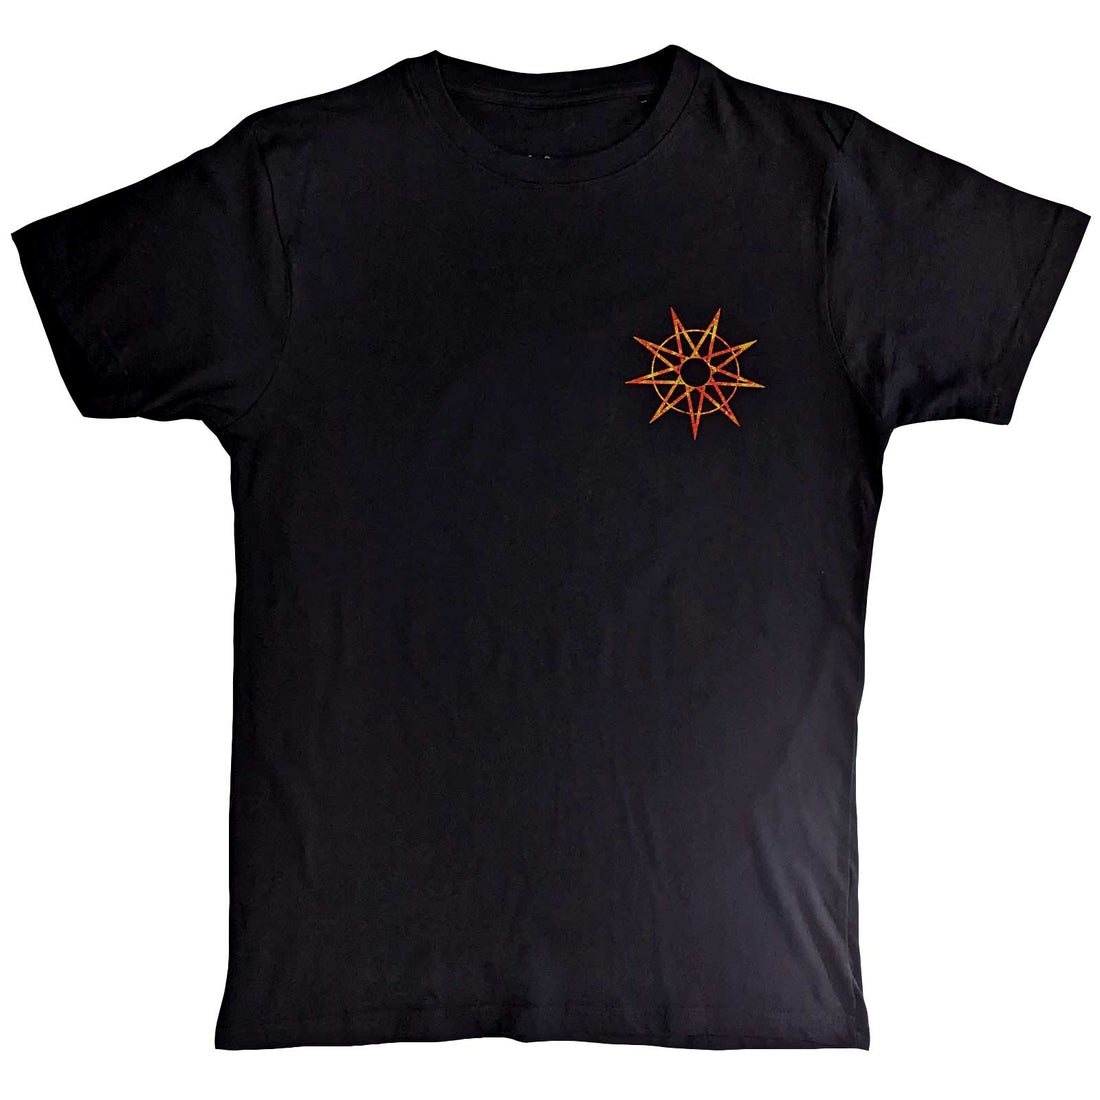 Slipknot Unisex T-Shirt: The End So Far Flame Logo (Back Print)